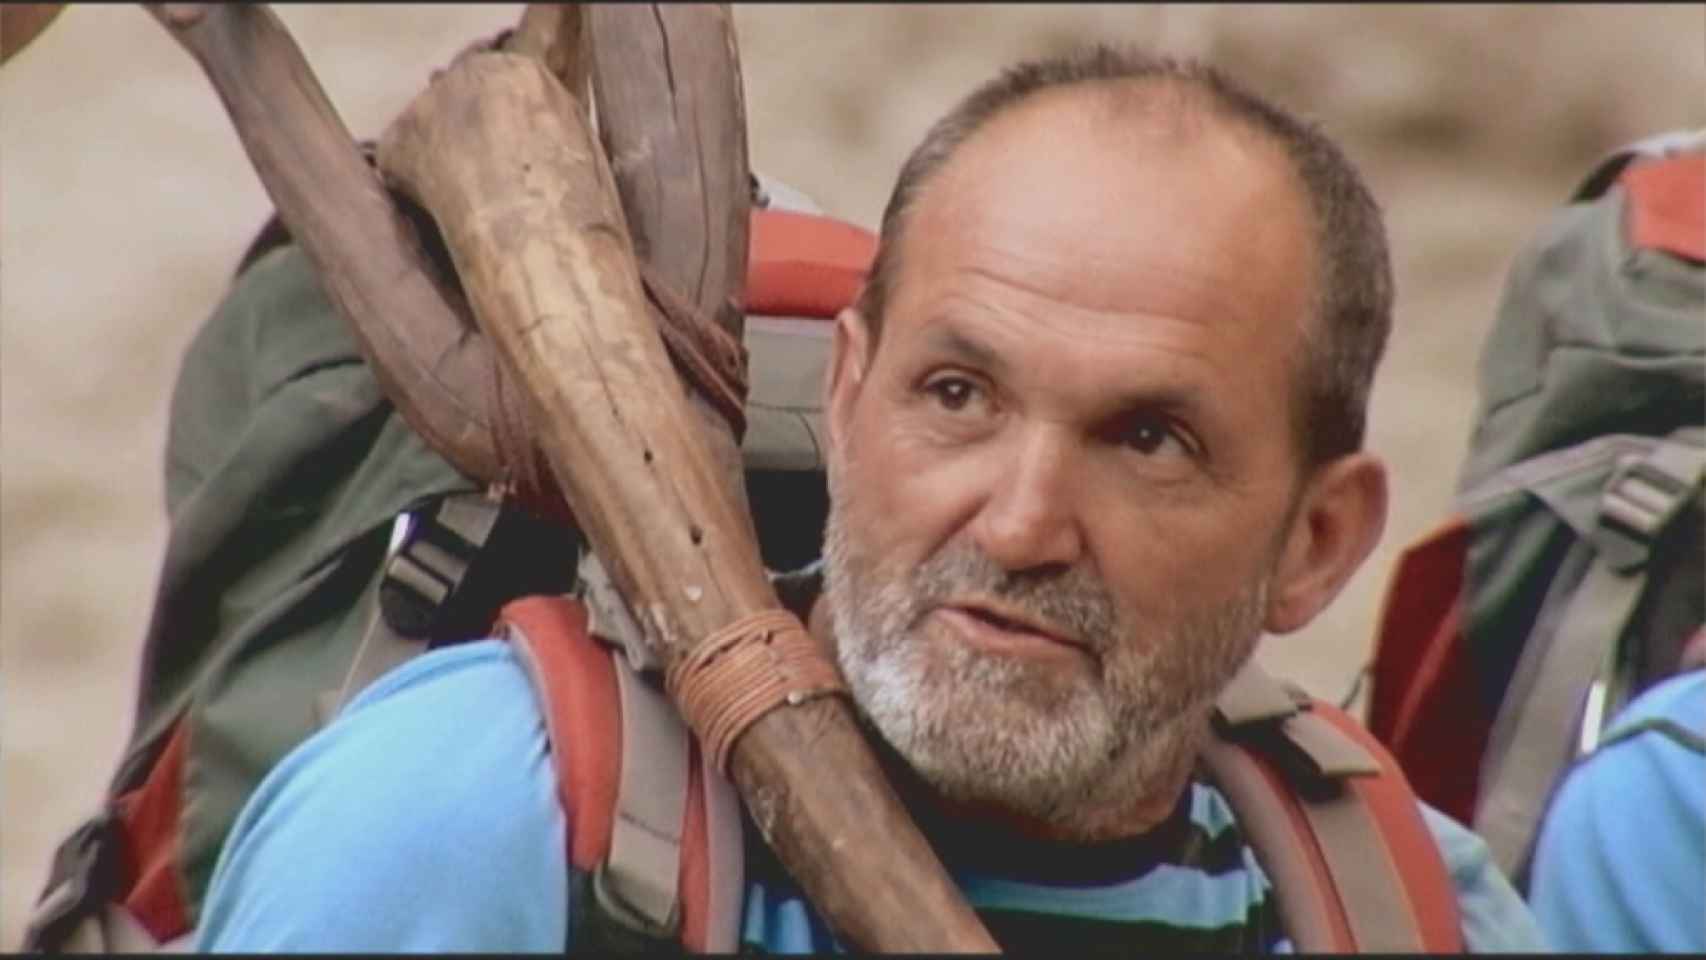 El montañero Juanito Oiarzabal es uno de los capitanes asiduos del programa.